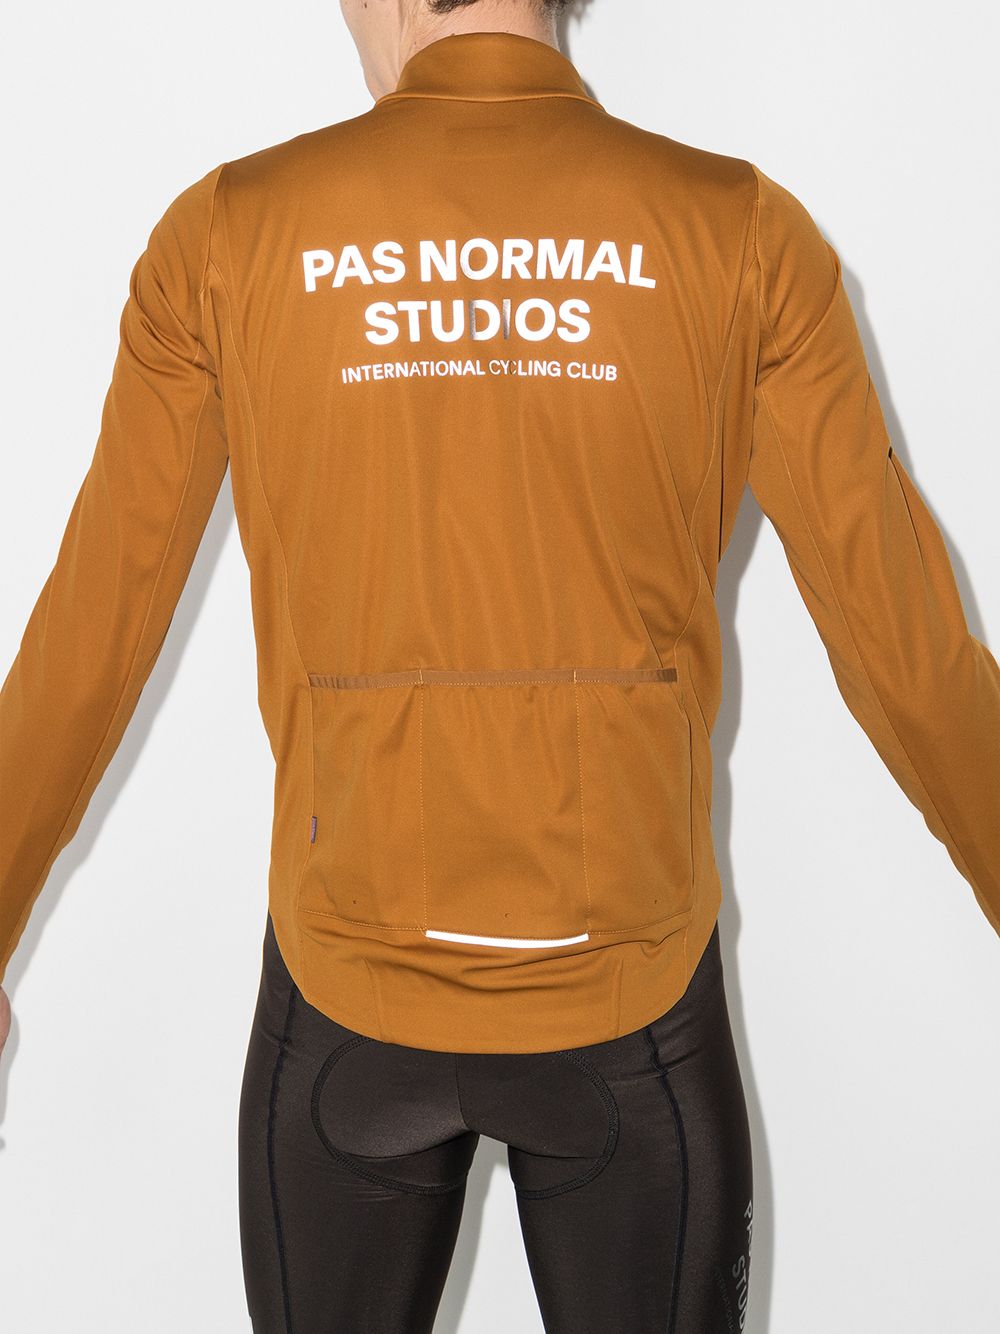 Pas Normal Studios Control Heavy Winter Jacket - Farfetch